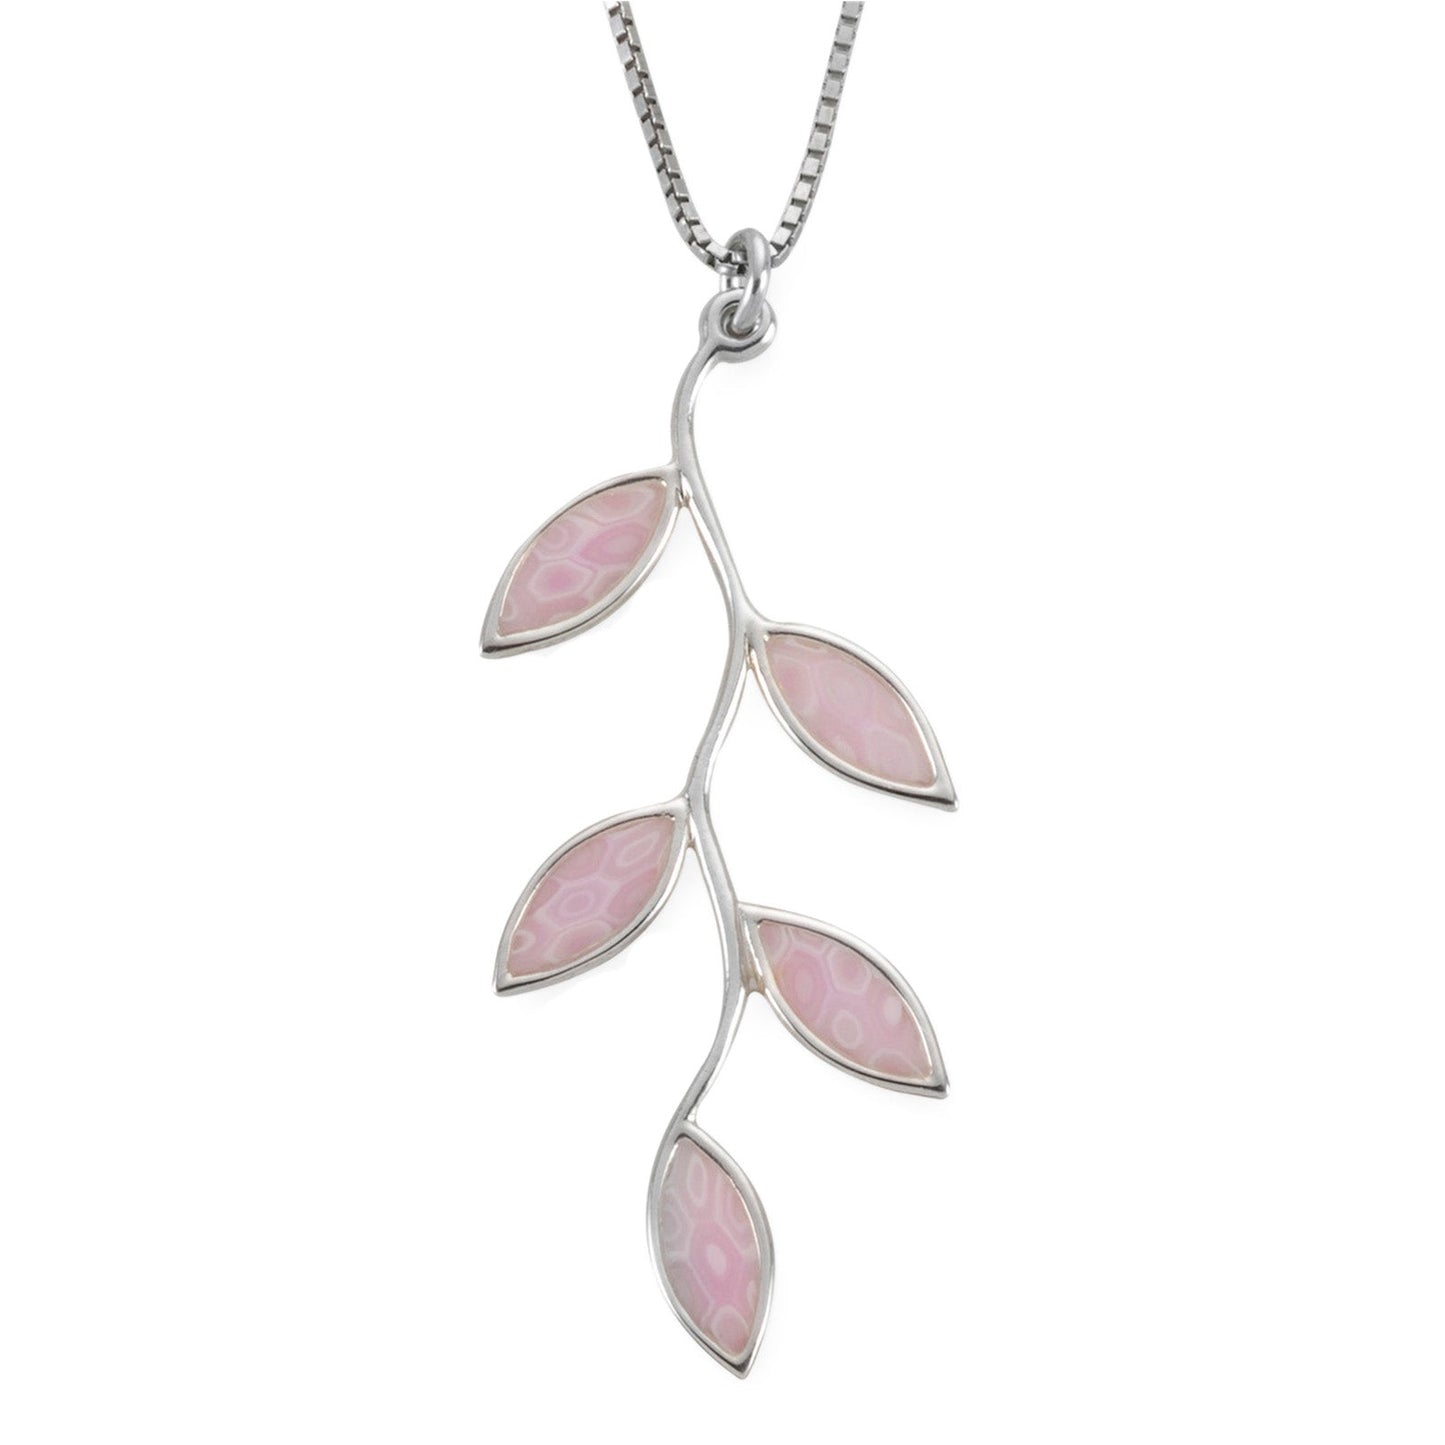 Olive Leaf Necklace